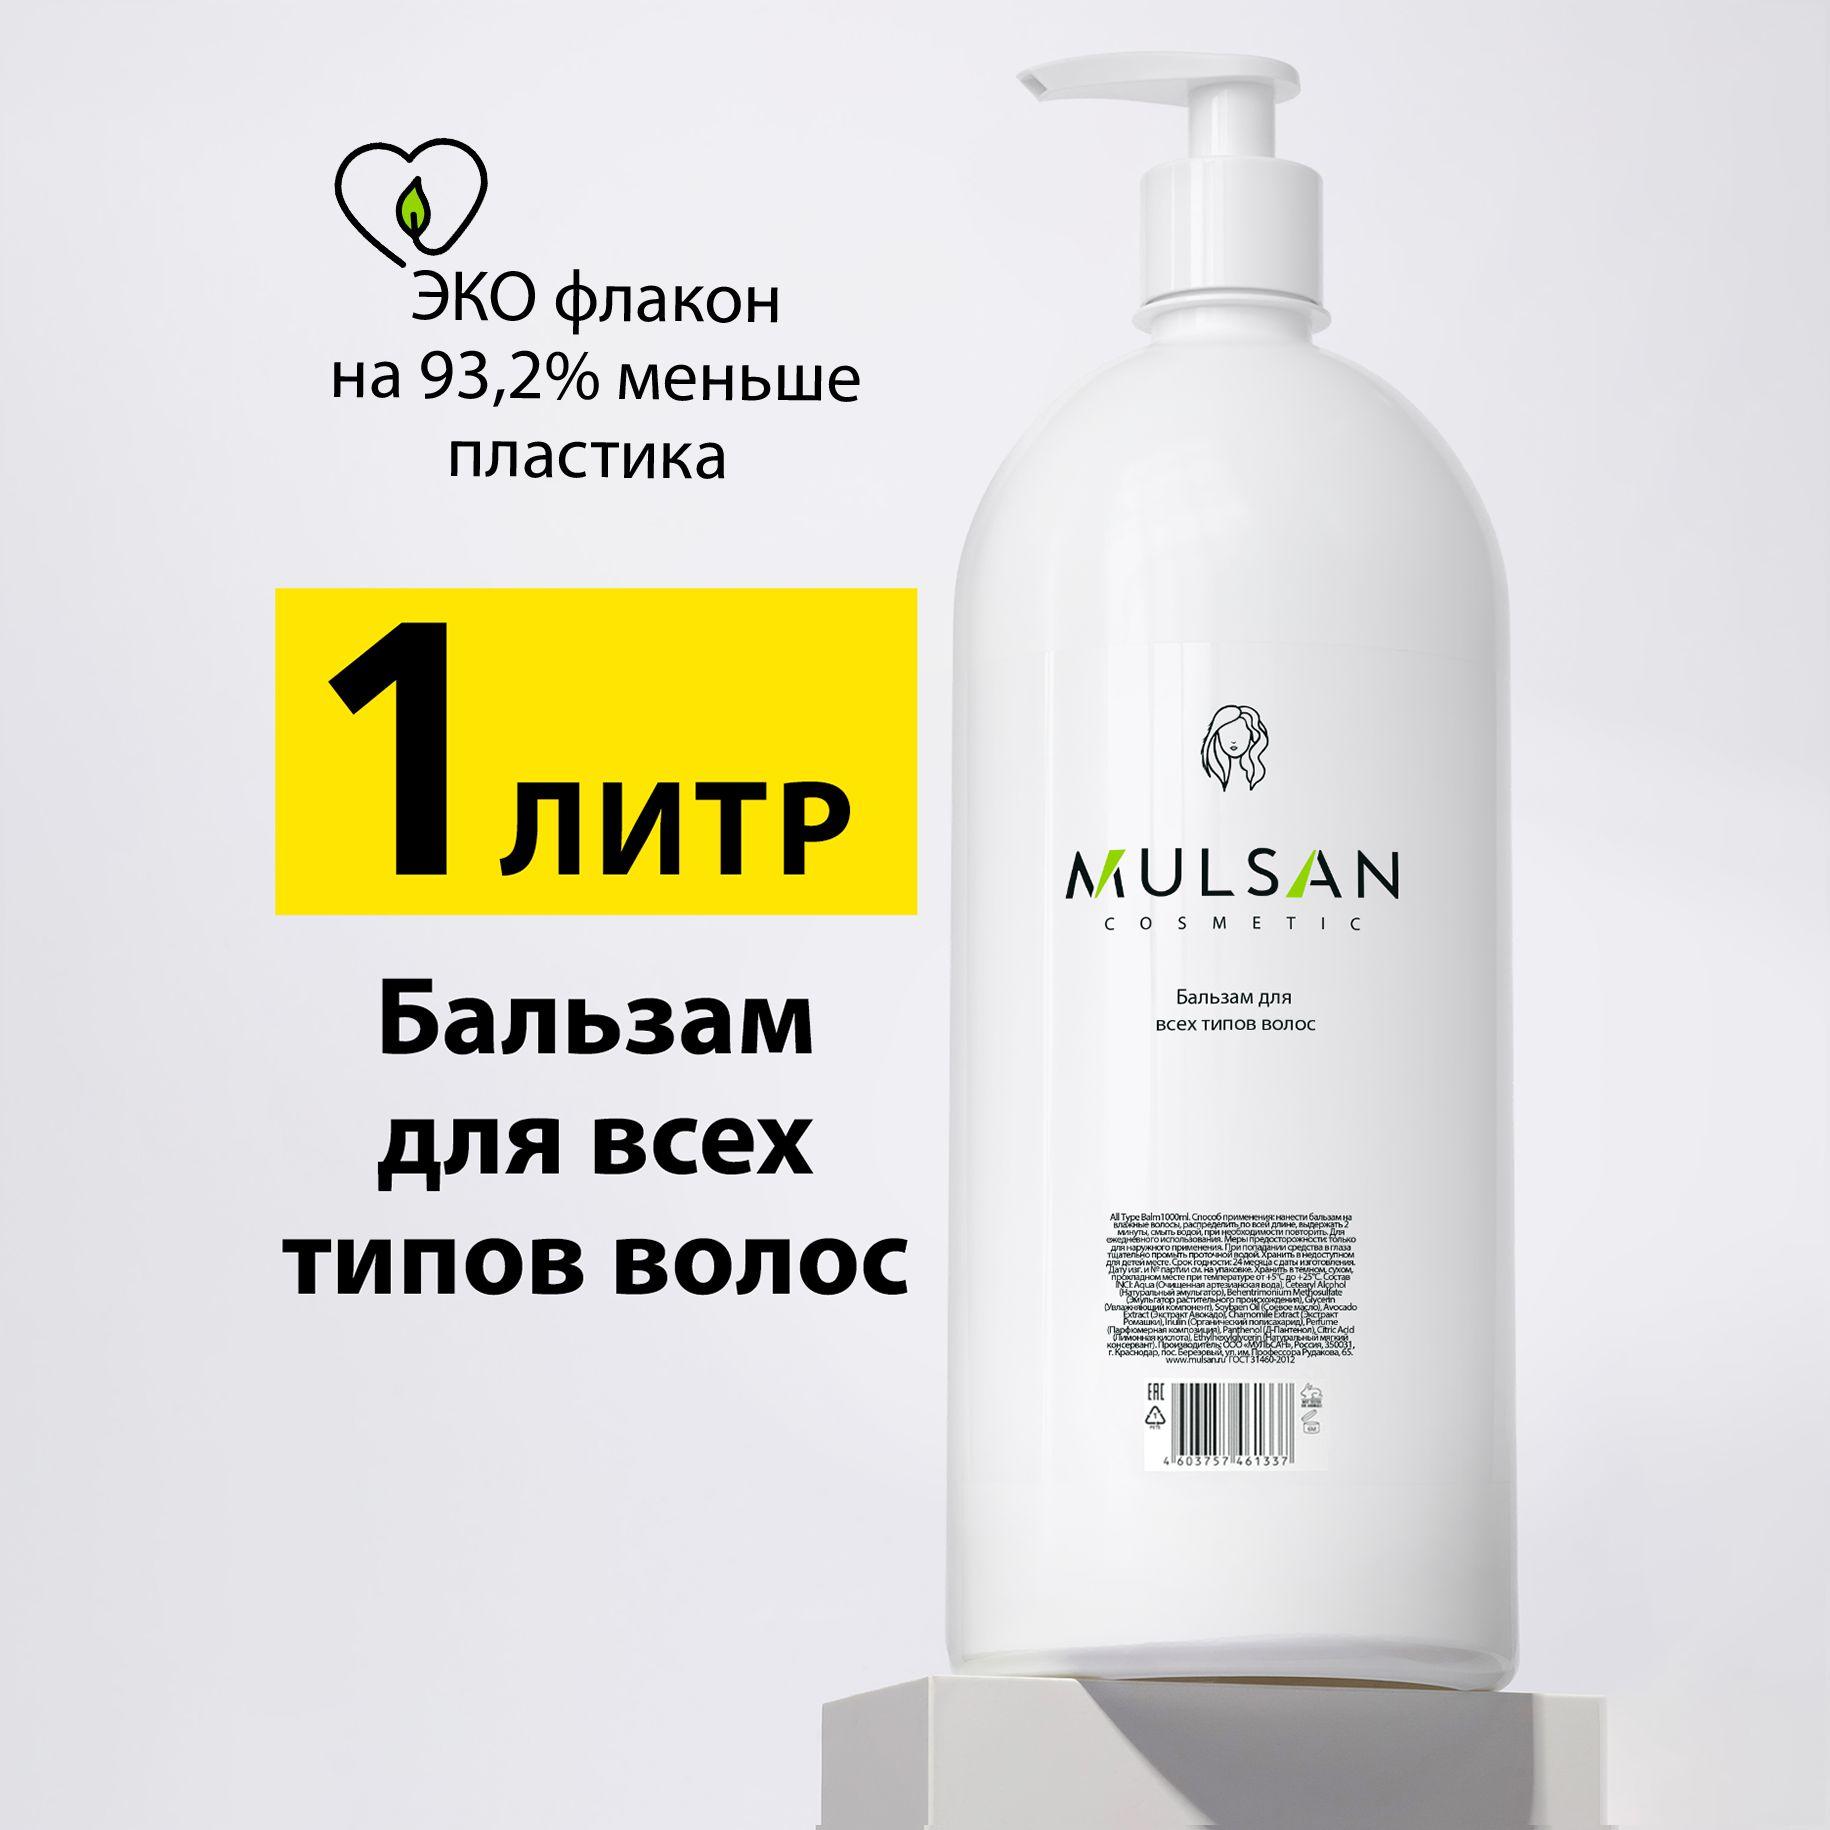 Mulsan | MULSAN Бальзам для всех типов волос натуральный профессиональный 1000 мл